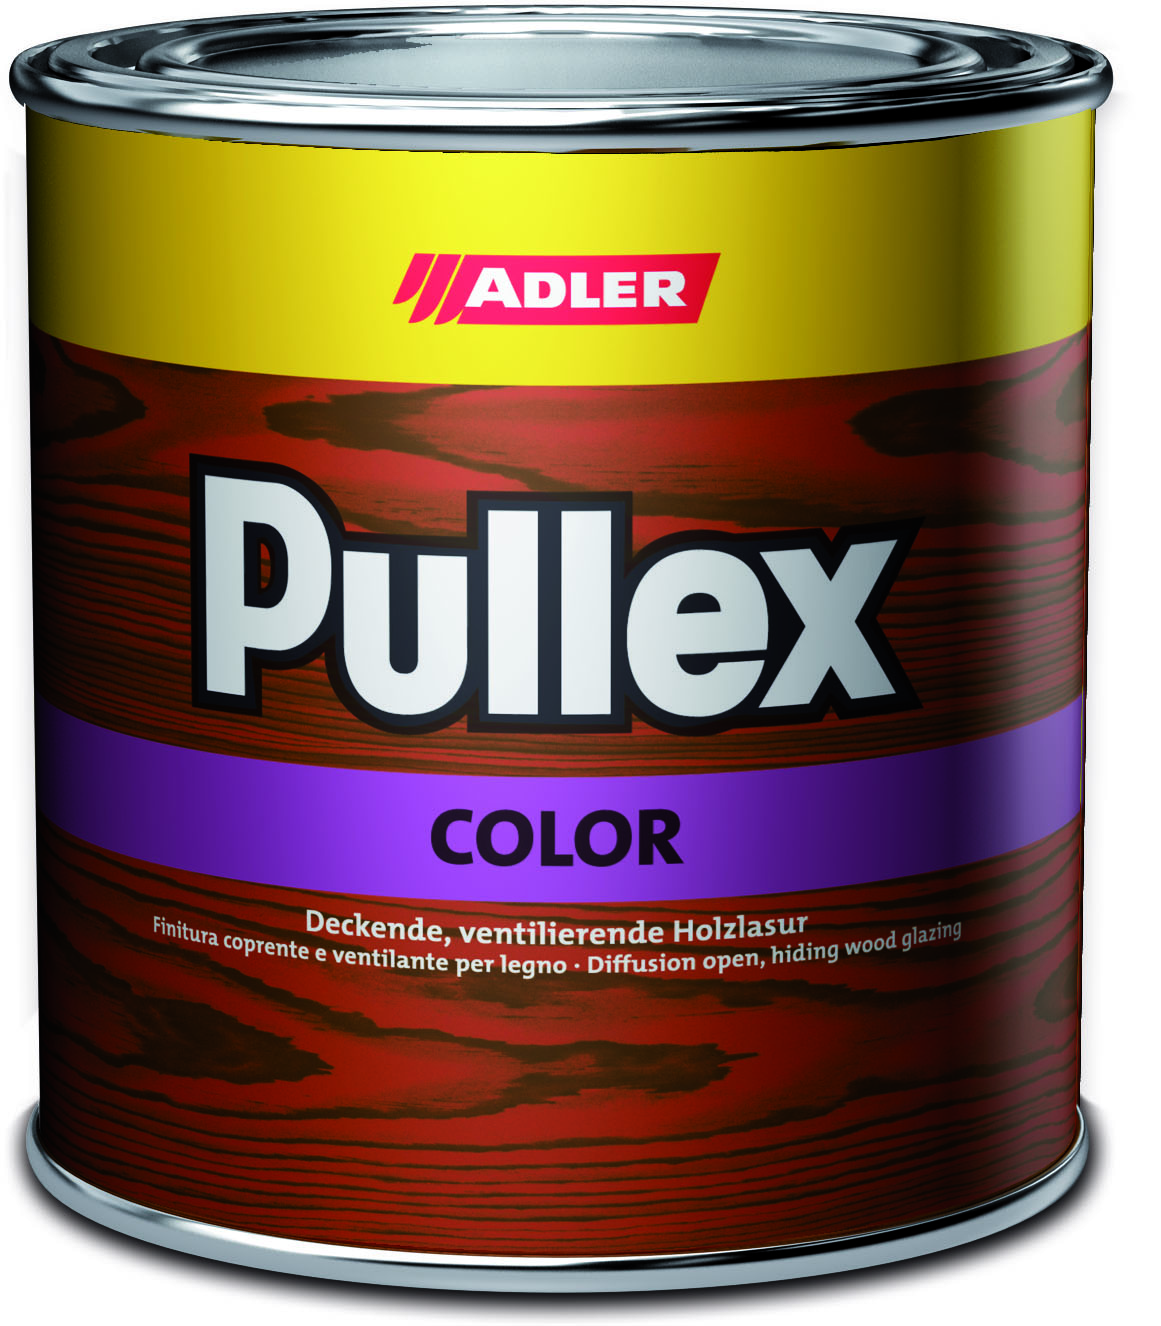 ADLER PULLEX COLOR - Ochranná farba na drevo do exteriéru ral 4005 - modrofialova 750 ml